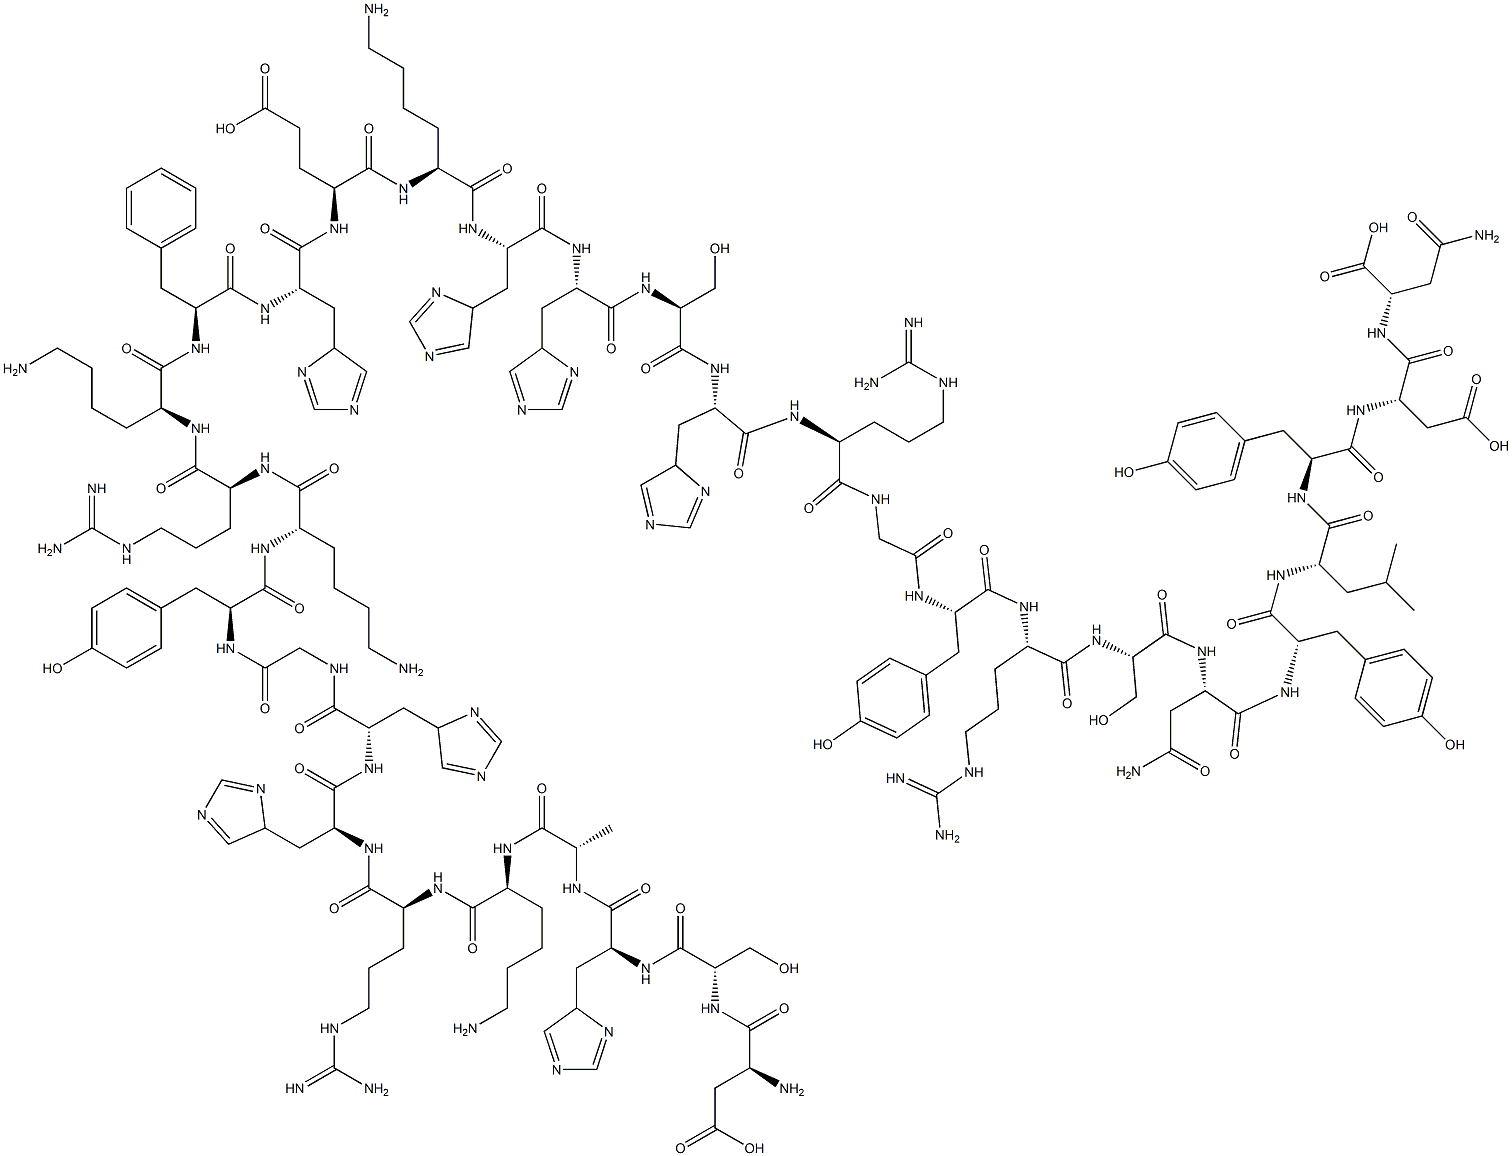 112844-49-2 L-Asparagine, L-a-aspartyl-L-seryl-L-histidyl-L-alanyl-L-lysyl-L-arginyl-L-histidyl-L-histidylglycyl-L-tyrosyl-L-lysyl-L-arginyl-L-lysyl-L-phenylalanyl-L-histidyl-L-a-glutamyl-L-lysyl-L-histidyl-L-histidyl-L-seryl-L-histidyl-L-arginylglycyl-L-tyrosyl-L-arginyl-L-seryl-L-asparaginyl-L-tyrosyl-L-leucyl-L-tyrosyl-L-a-aspartyl-